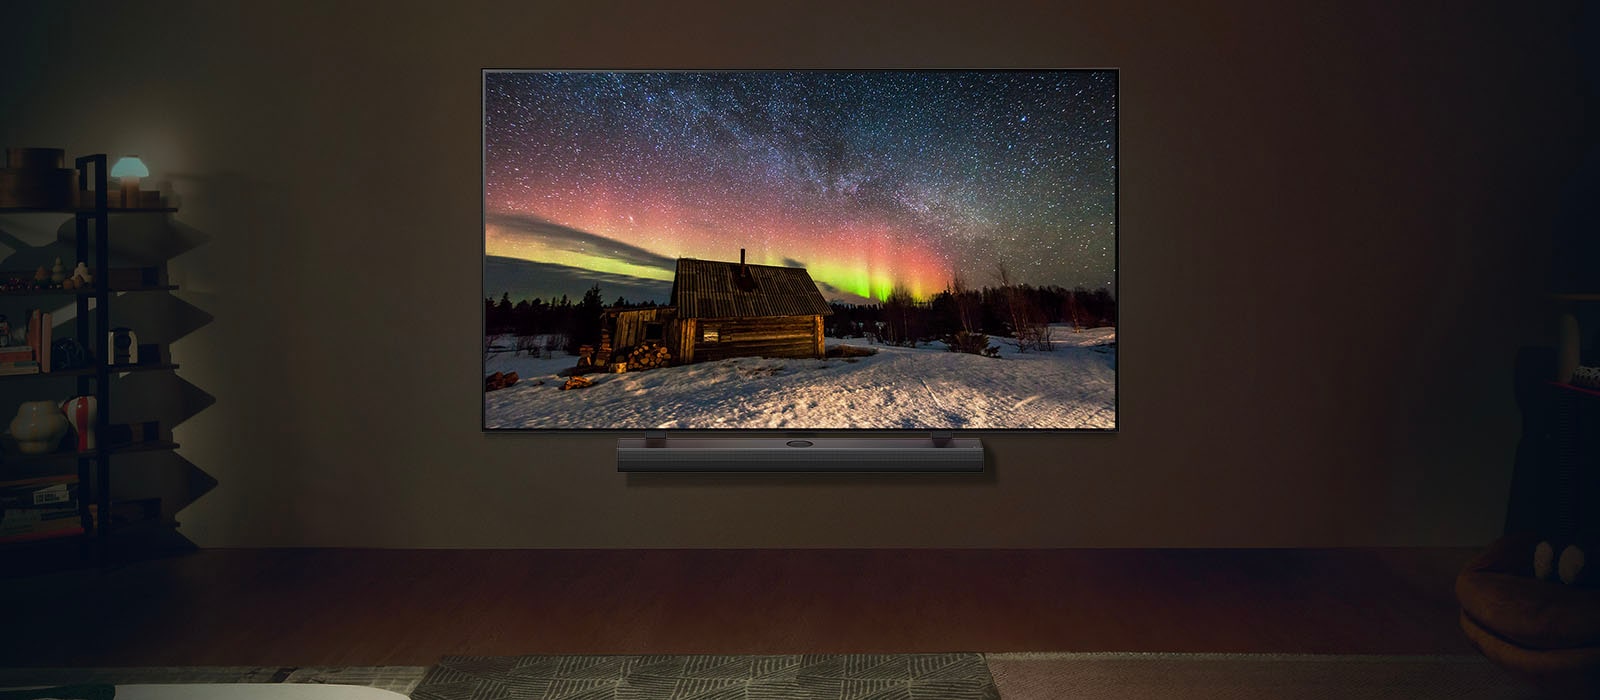 Μια LG TV και ένα LG Soundbar σε ένα σύγχρονο σαλόνι τη νύχτα. Εμφανίζεται μια εικόνα της οθόνης του Βόρειου Σέλας με τα ιδανικά επίπεδα φωτεινότητας.